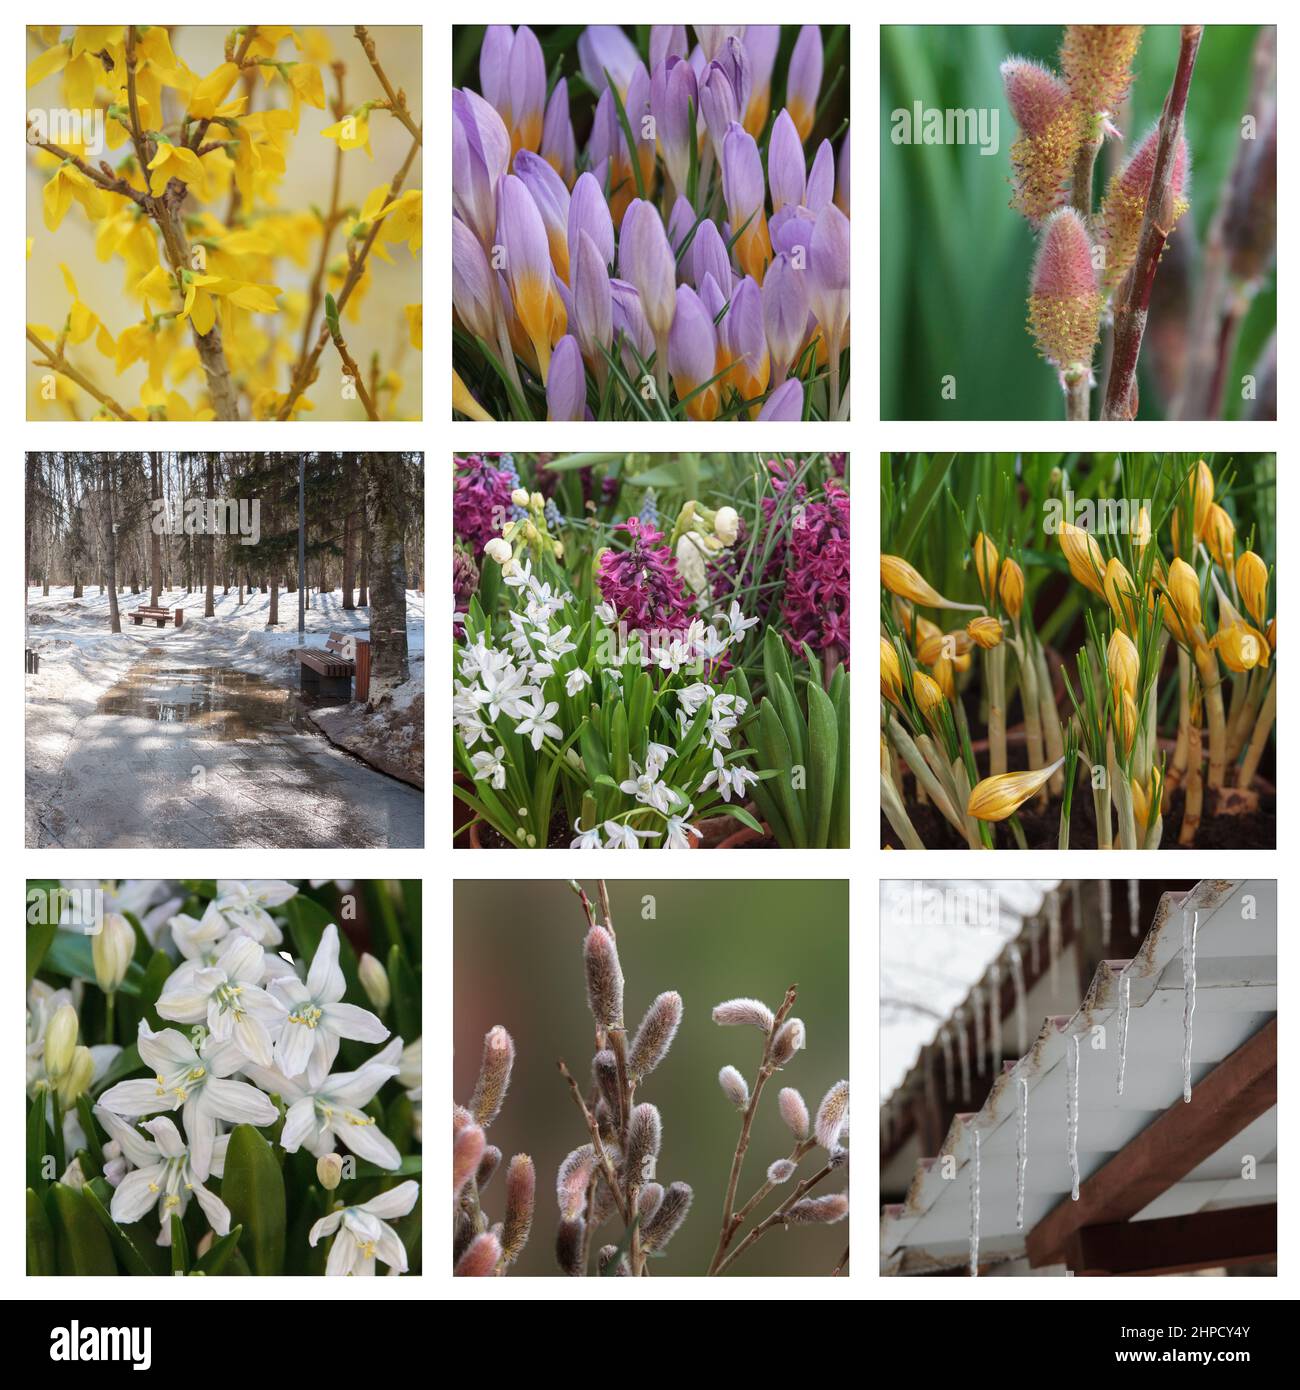 Rametti di salice soffice e fiori colorati bianchi, rossi e gialli in giardino in una giornata di sole all'inizio della primavera. Collage fotografico. Foto Stock